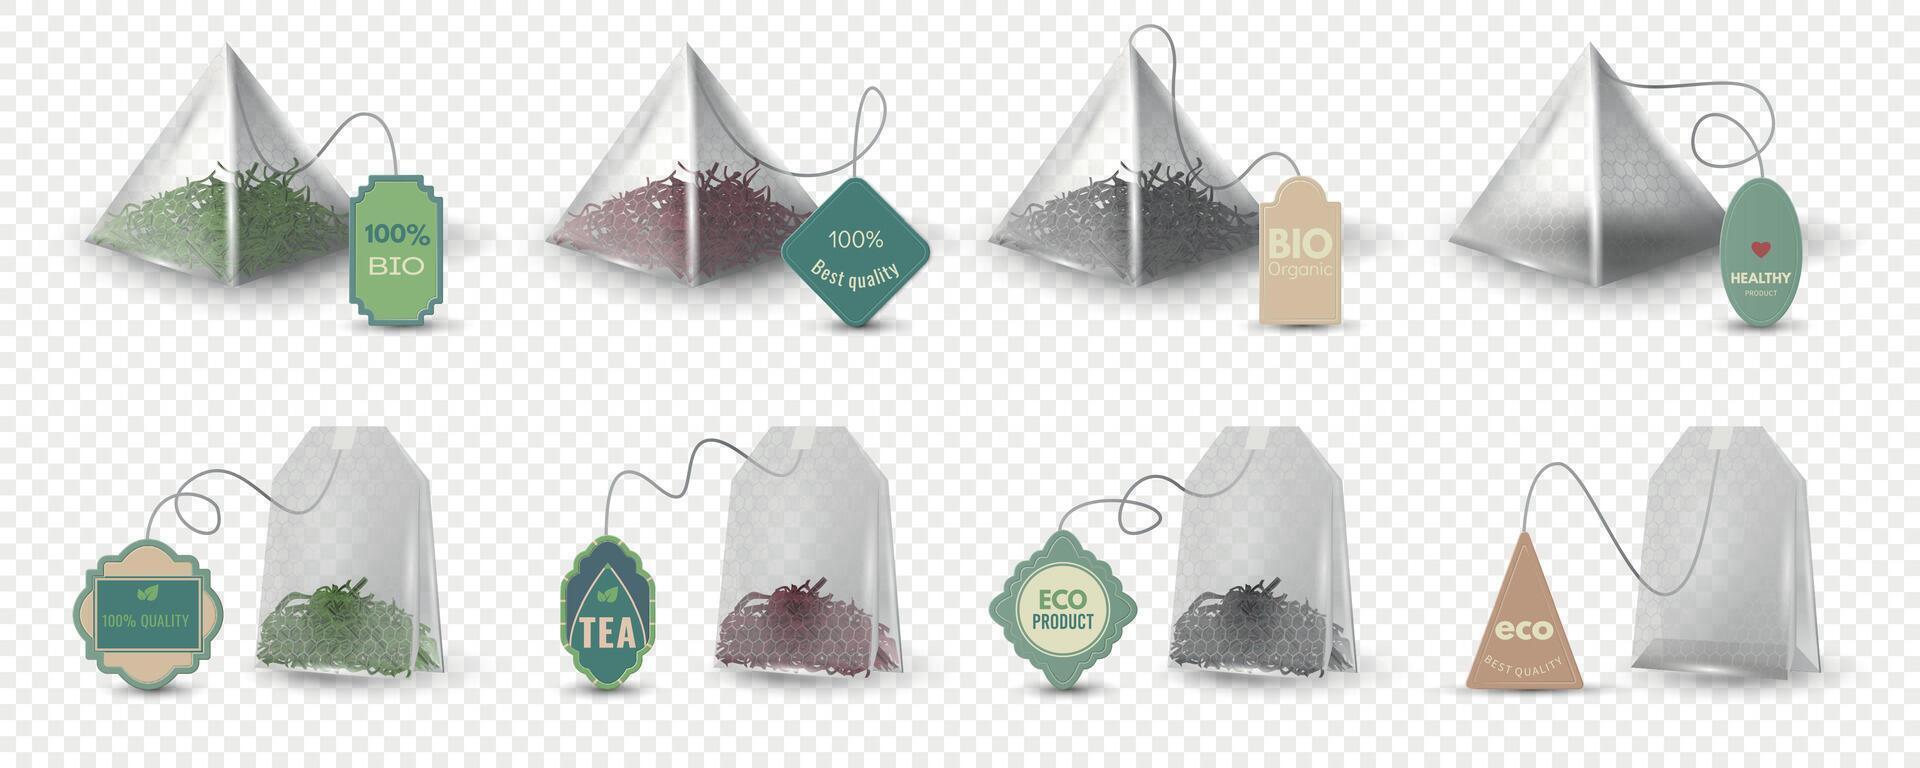 réaliste pyramide et rectangulaire vert, rouge et noir thé Sacs avec Mots clés. vide 3d sachet de thé maquette avec Étiquettes pour à base de plantes boisson vecteur ensemble